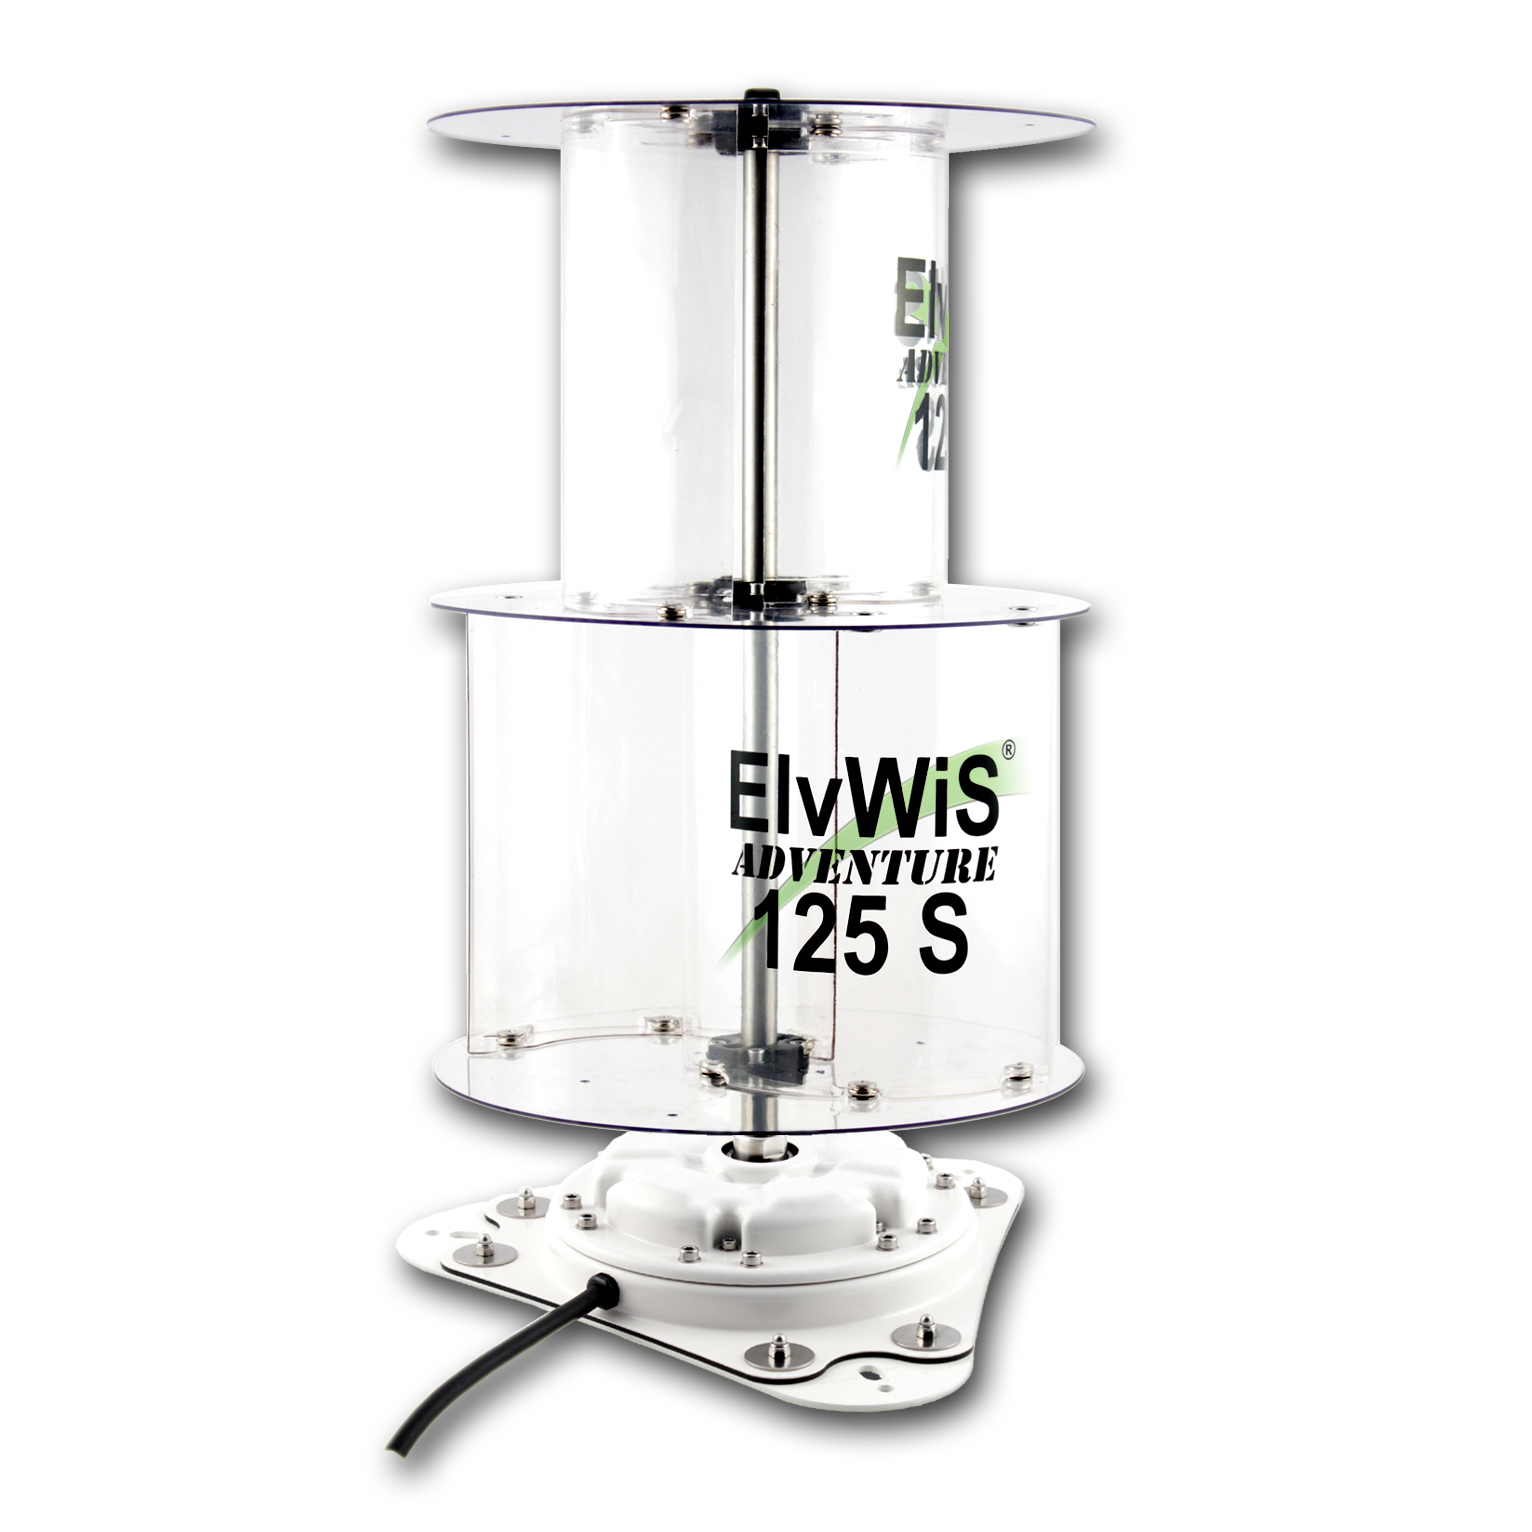 ElvWiS ADVENTURE 125S Stationary Wind Turbine, demountable